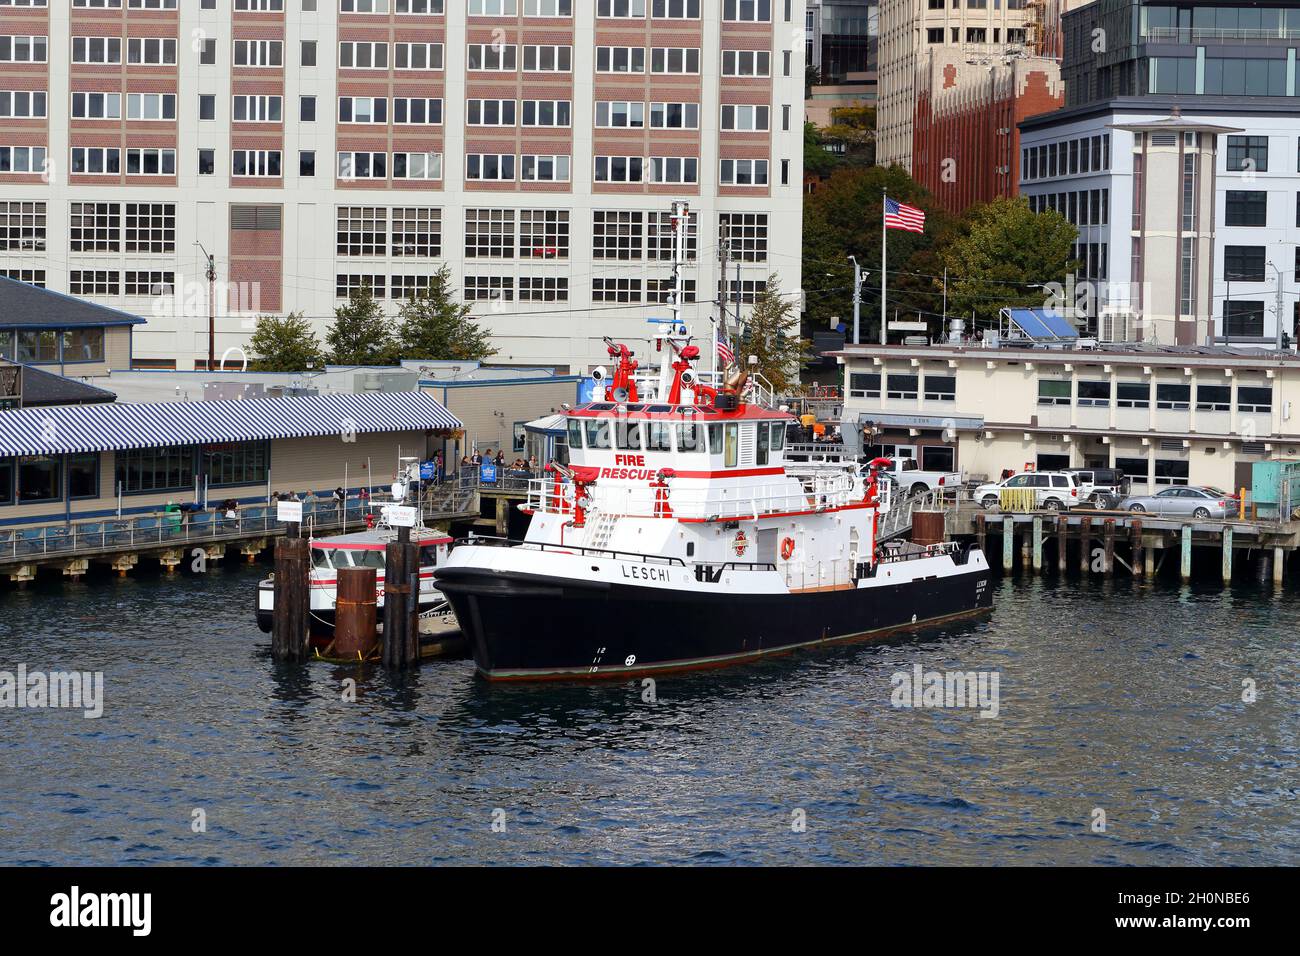 Das Feuerwehrboot Leschi der Feuerwehr von Seattle dockte an der Feuerwache 5 an, während das Feuerwehrboot 2 daneben angedockt war. Pier 54 auf der linken Seite. Stockfoto